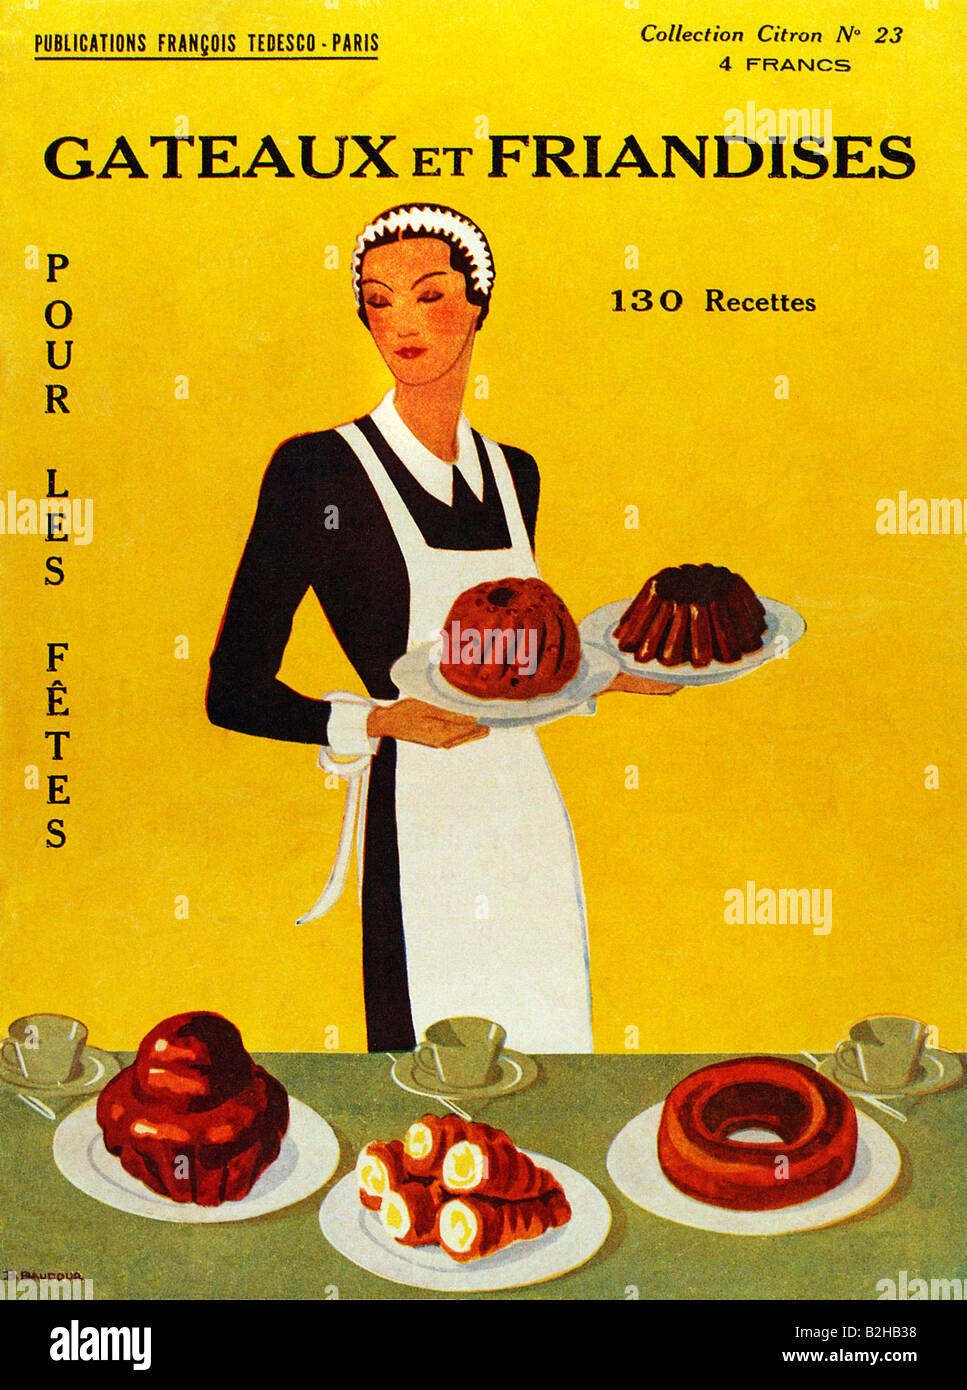 Recettes de desserts français 1921 brochure pour cuisine de fête gâteaux, friandises et des friandises gâteaux et friandises Banque D'Images